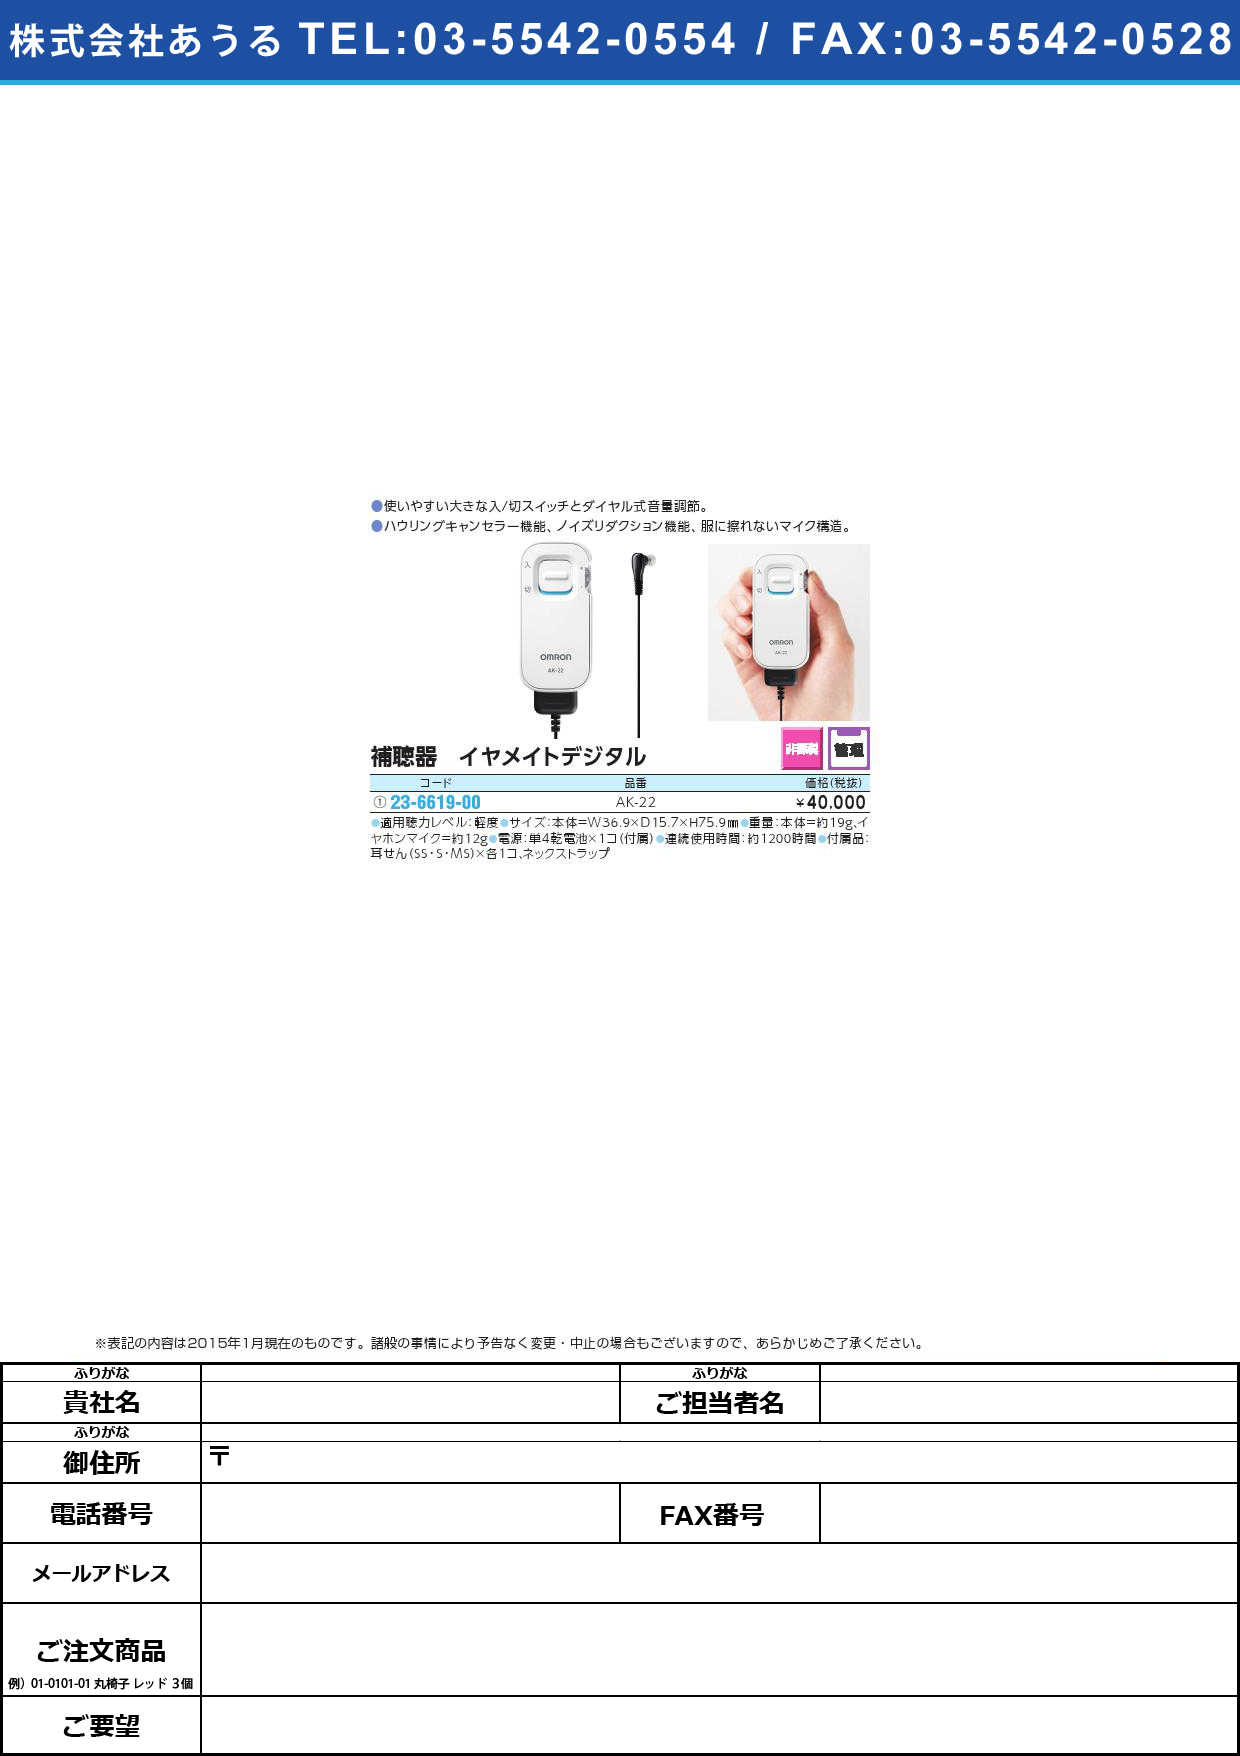 デジタル式補聴器 イヤメイトデジタル ﾎﾁｮｳｷｲﾔﾒｲﾄﾃﾞｼﾞﾀﾙ(23-6619-00)AK-22【1台単位】